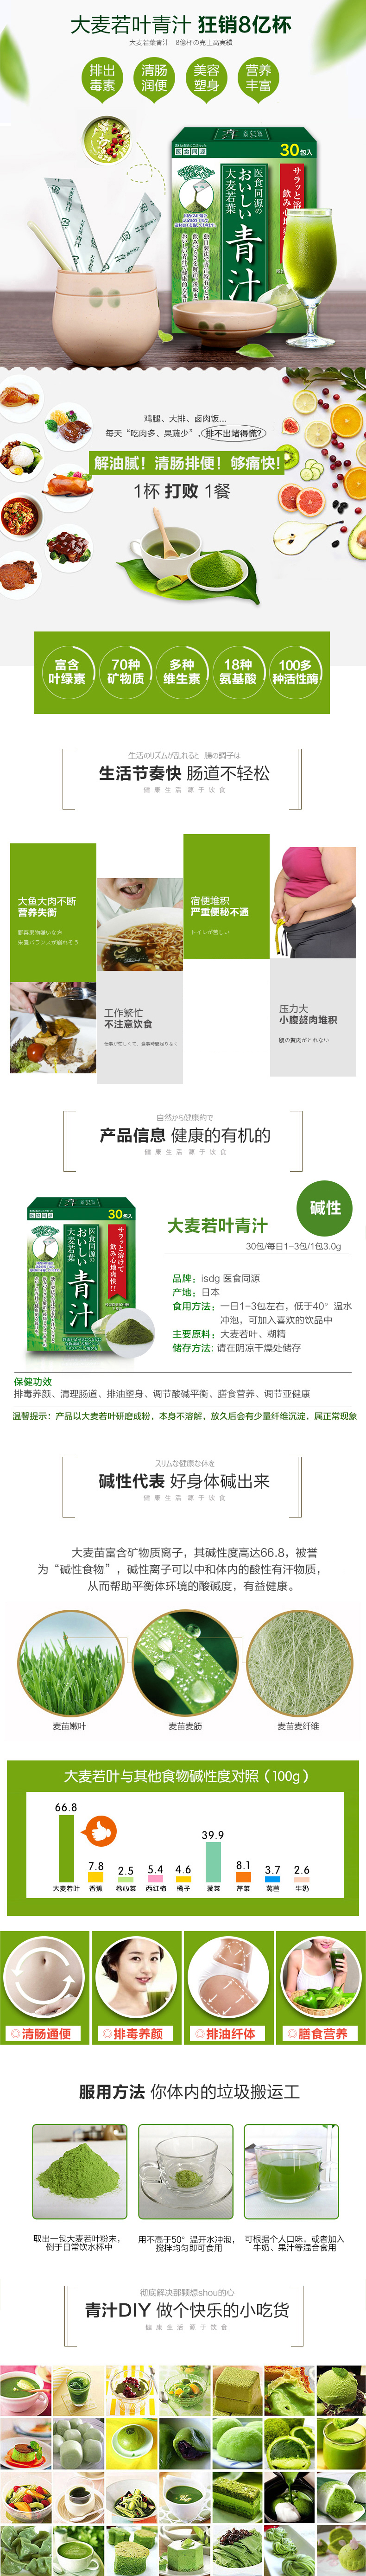 日本 ISDG 醫食同源酵素 232種蔬果 排毒燃脂瘦身 大麥若葉青汁粉 50支